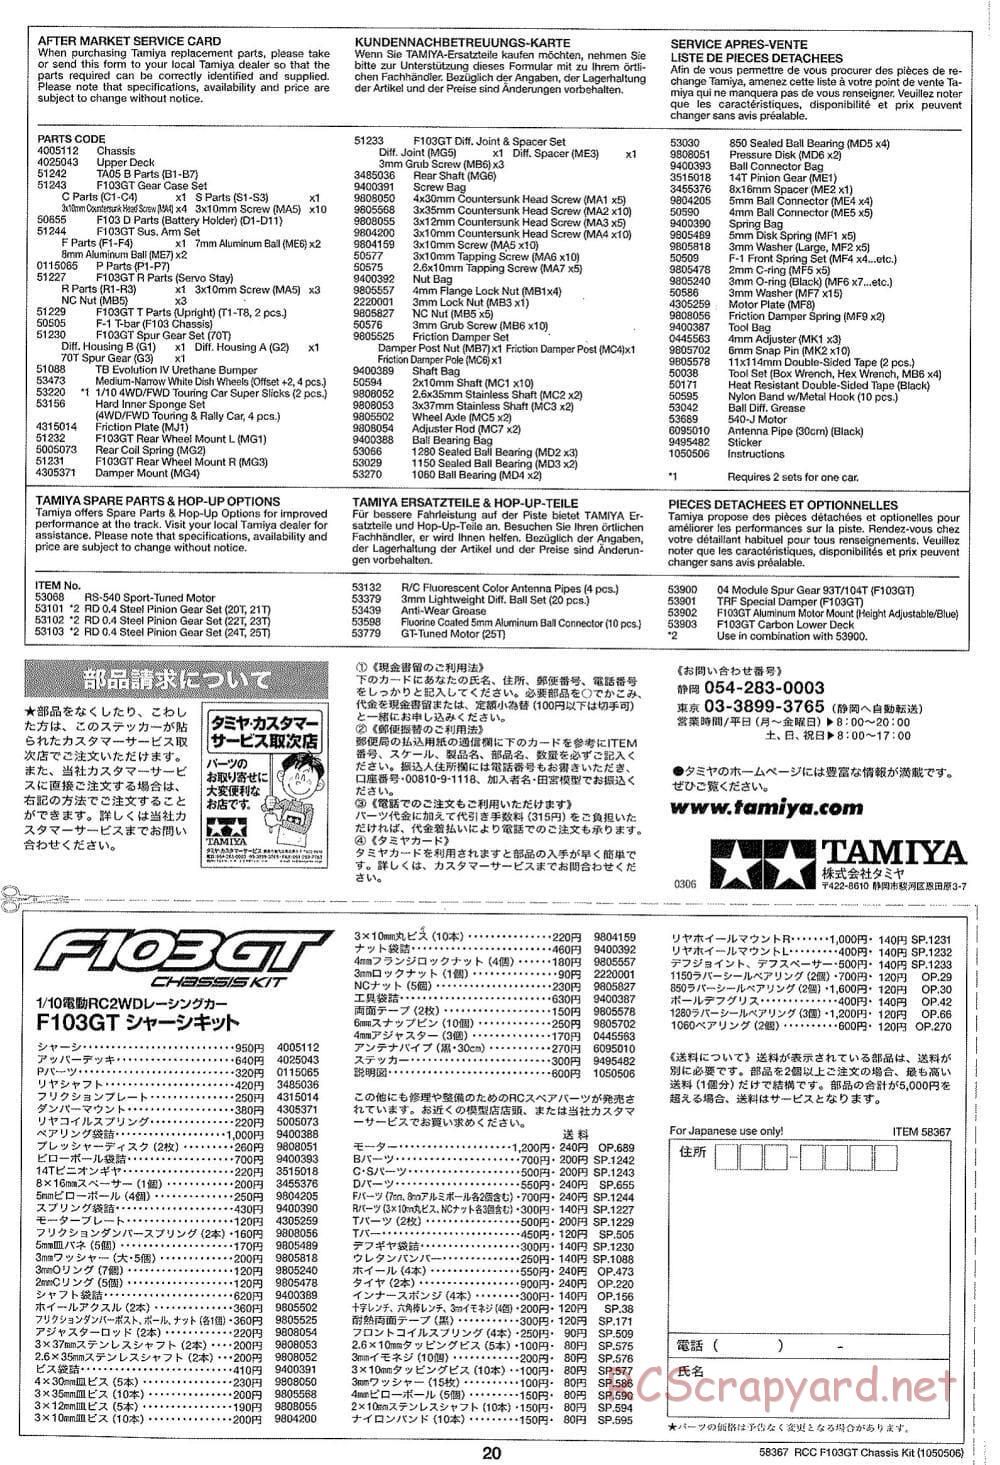 Tamiya - F103GT Chassis Kit - Manual - Page 20